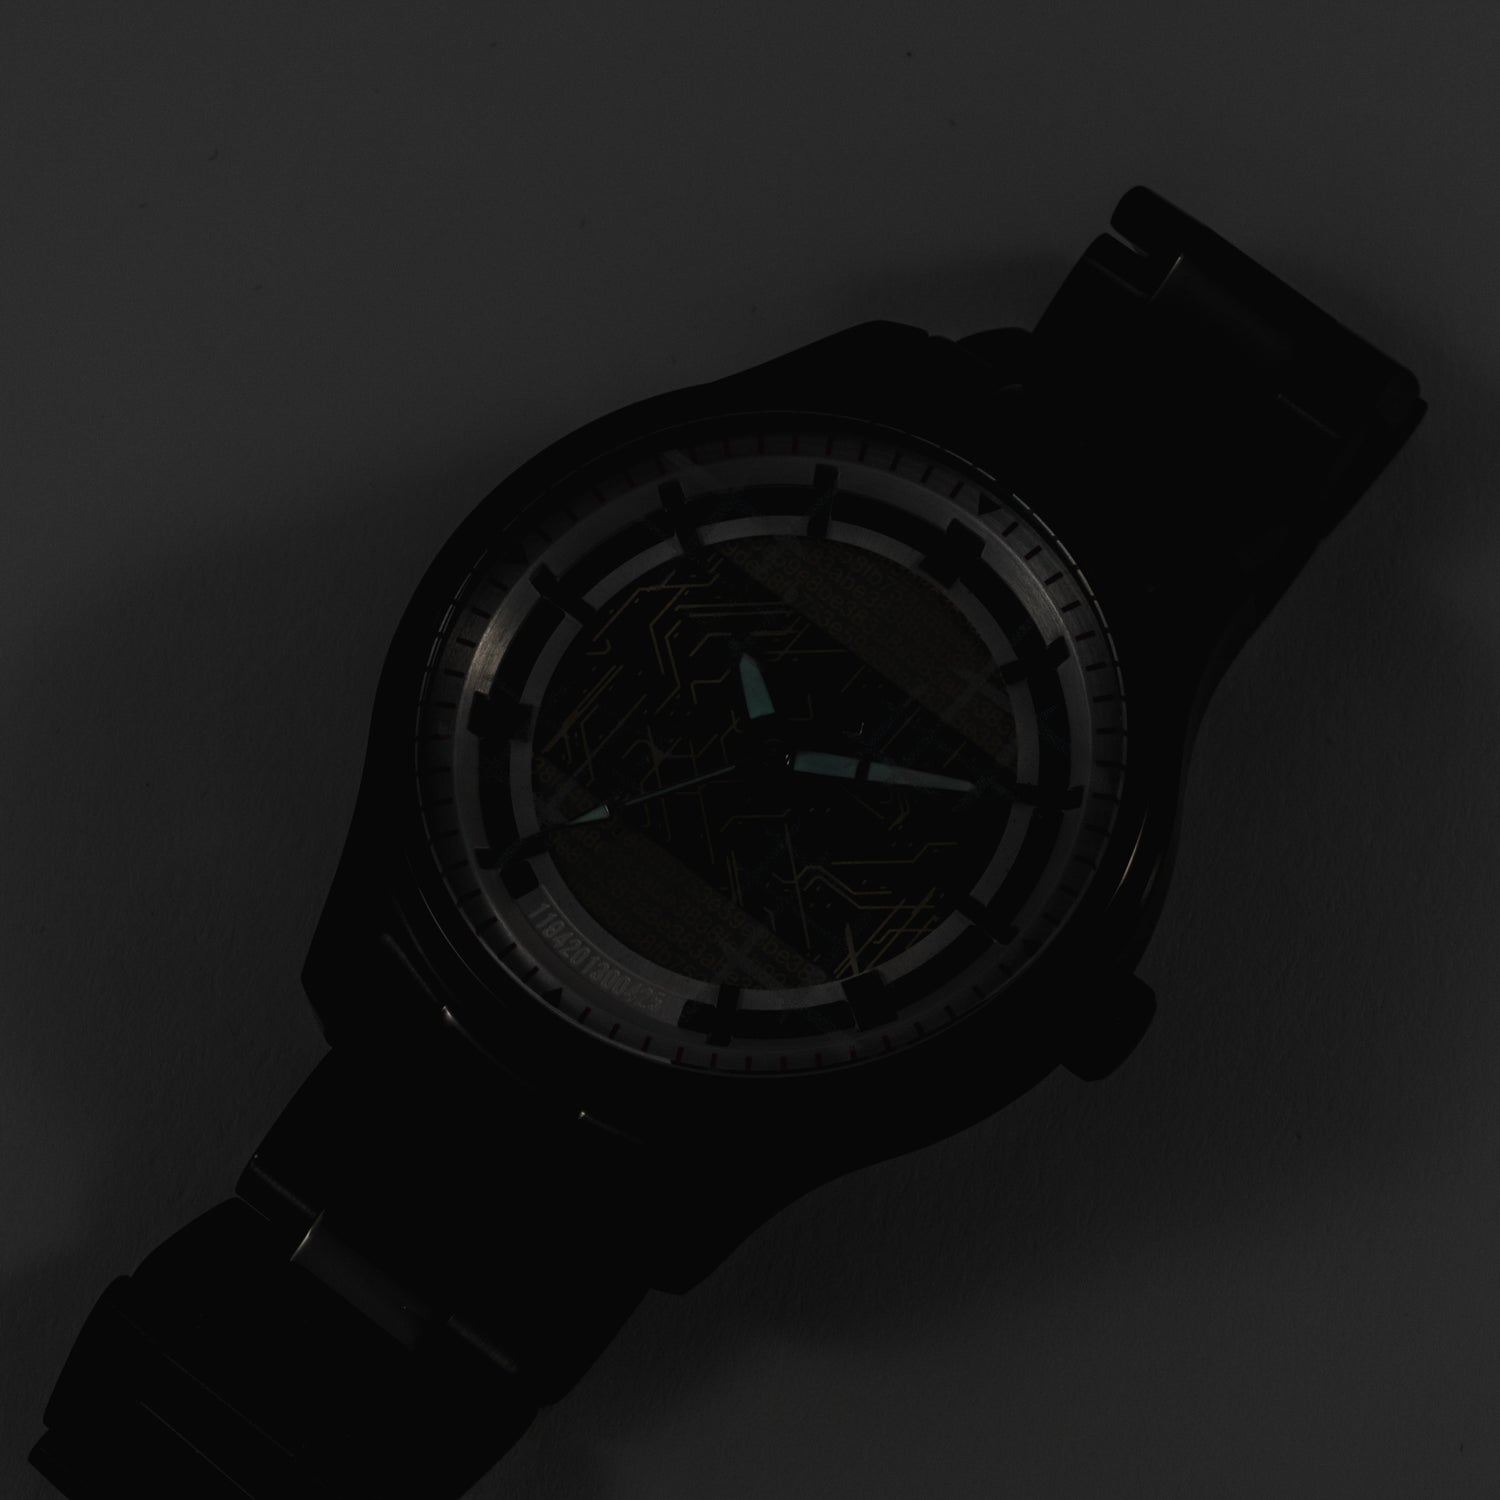 9S(ヨルハ九号S型) モデル 腕時計 NieR:Automata Ver1.1a